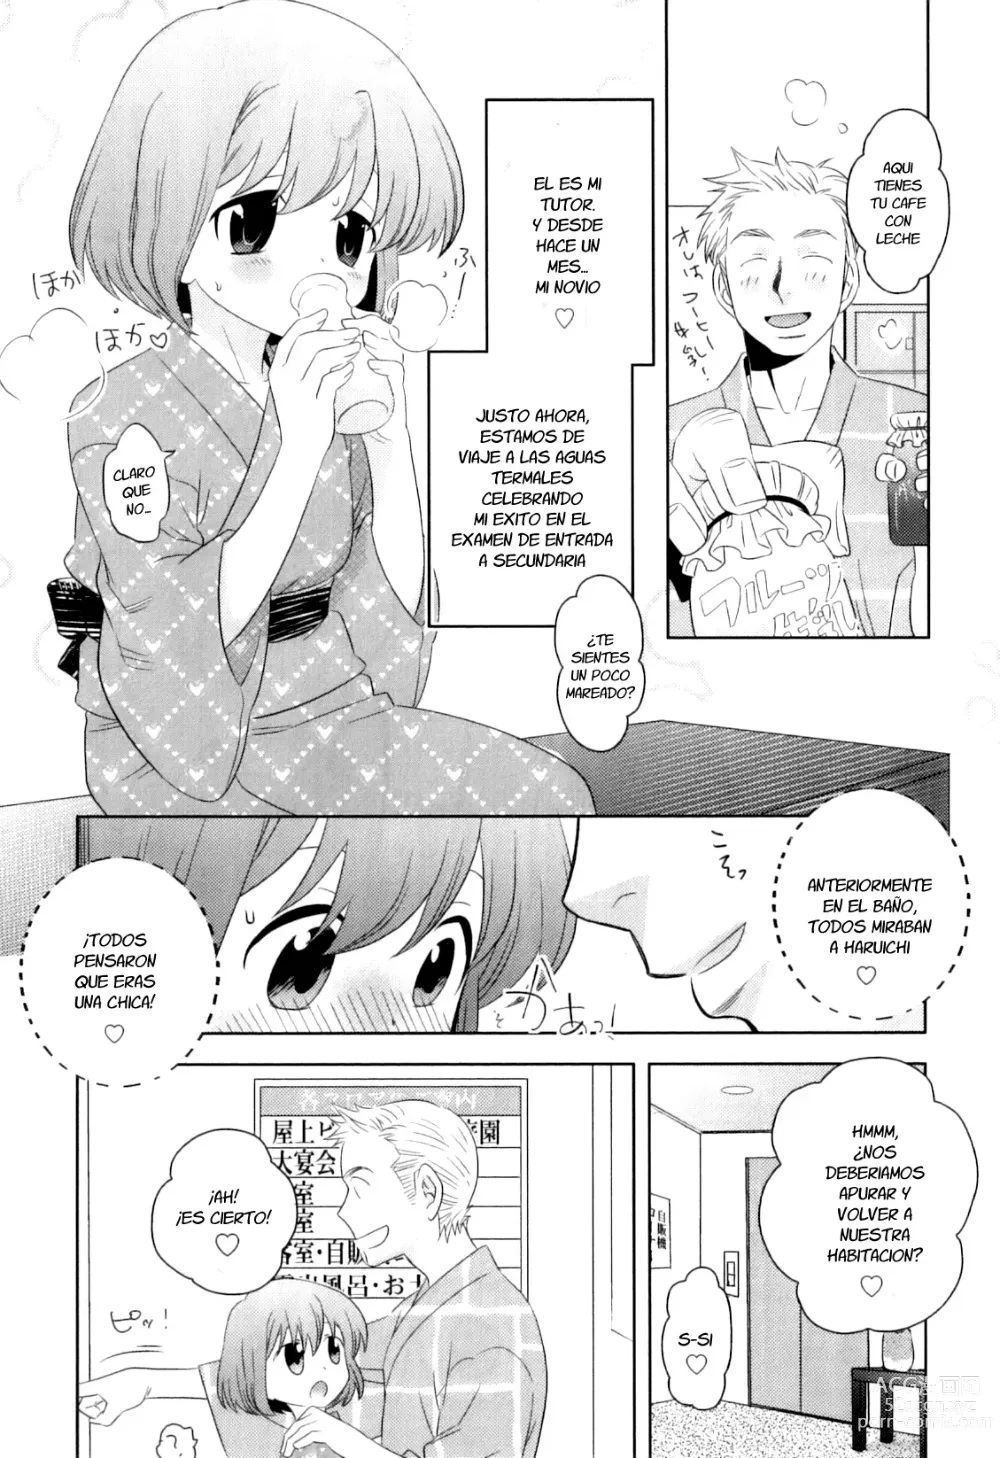 Page 5 of manga Ro*Buro